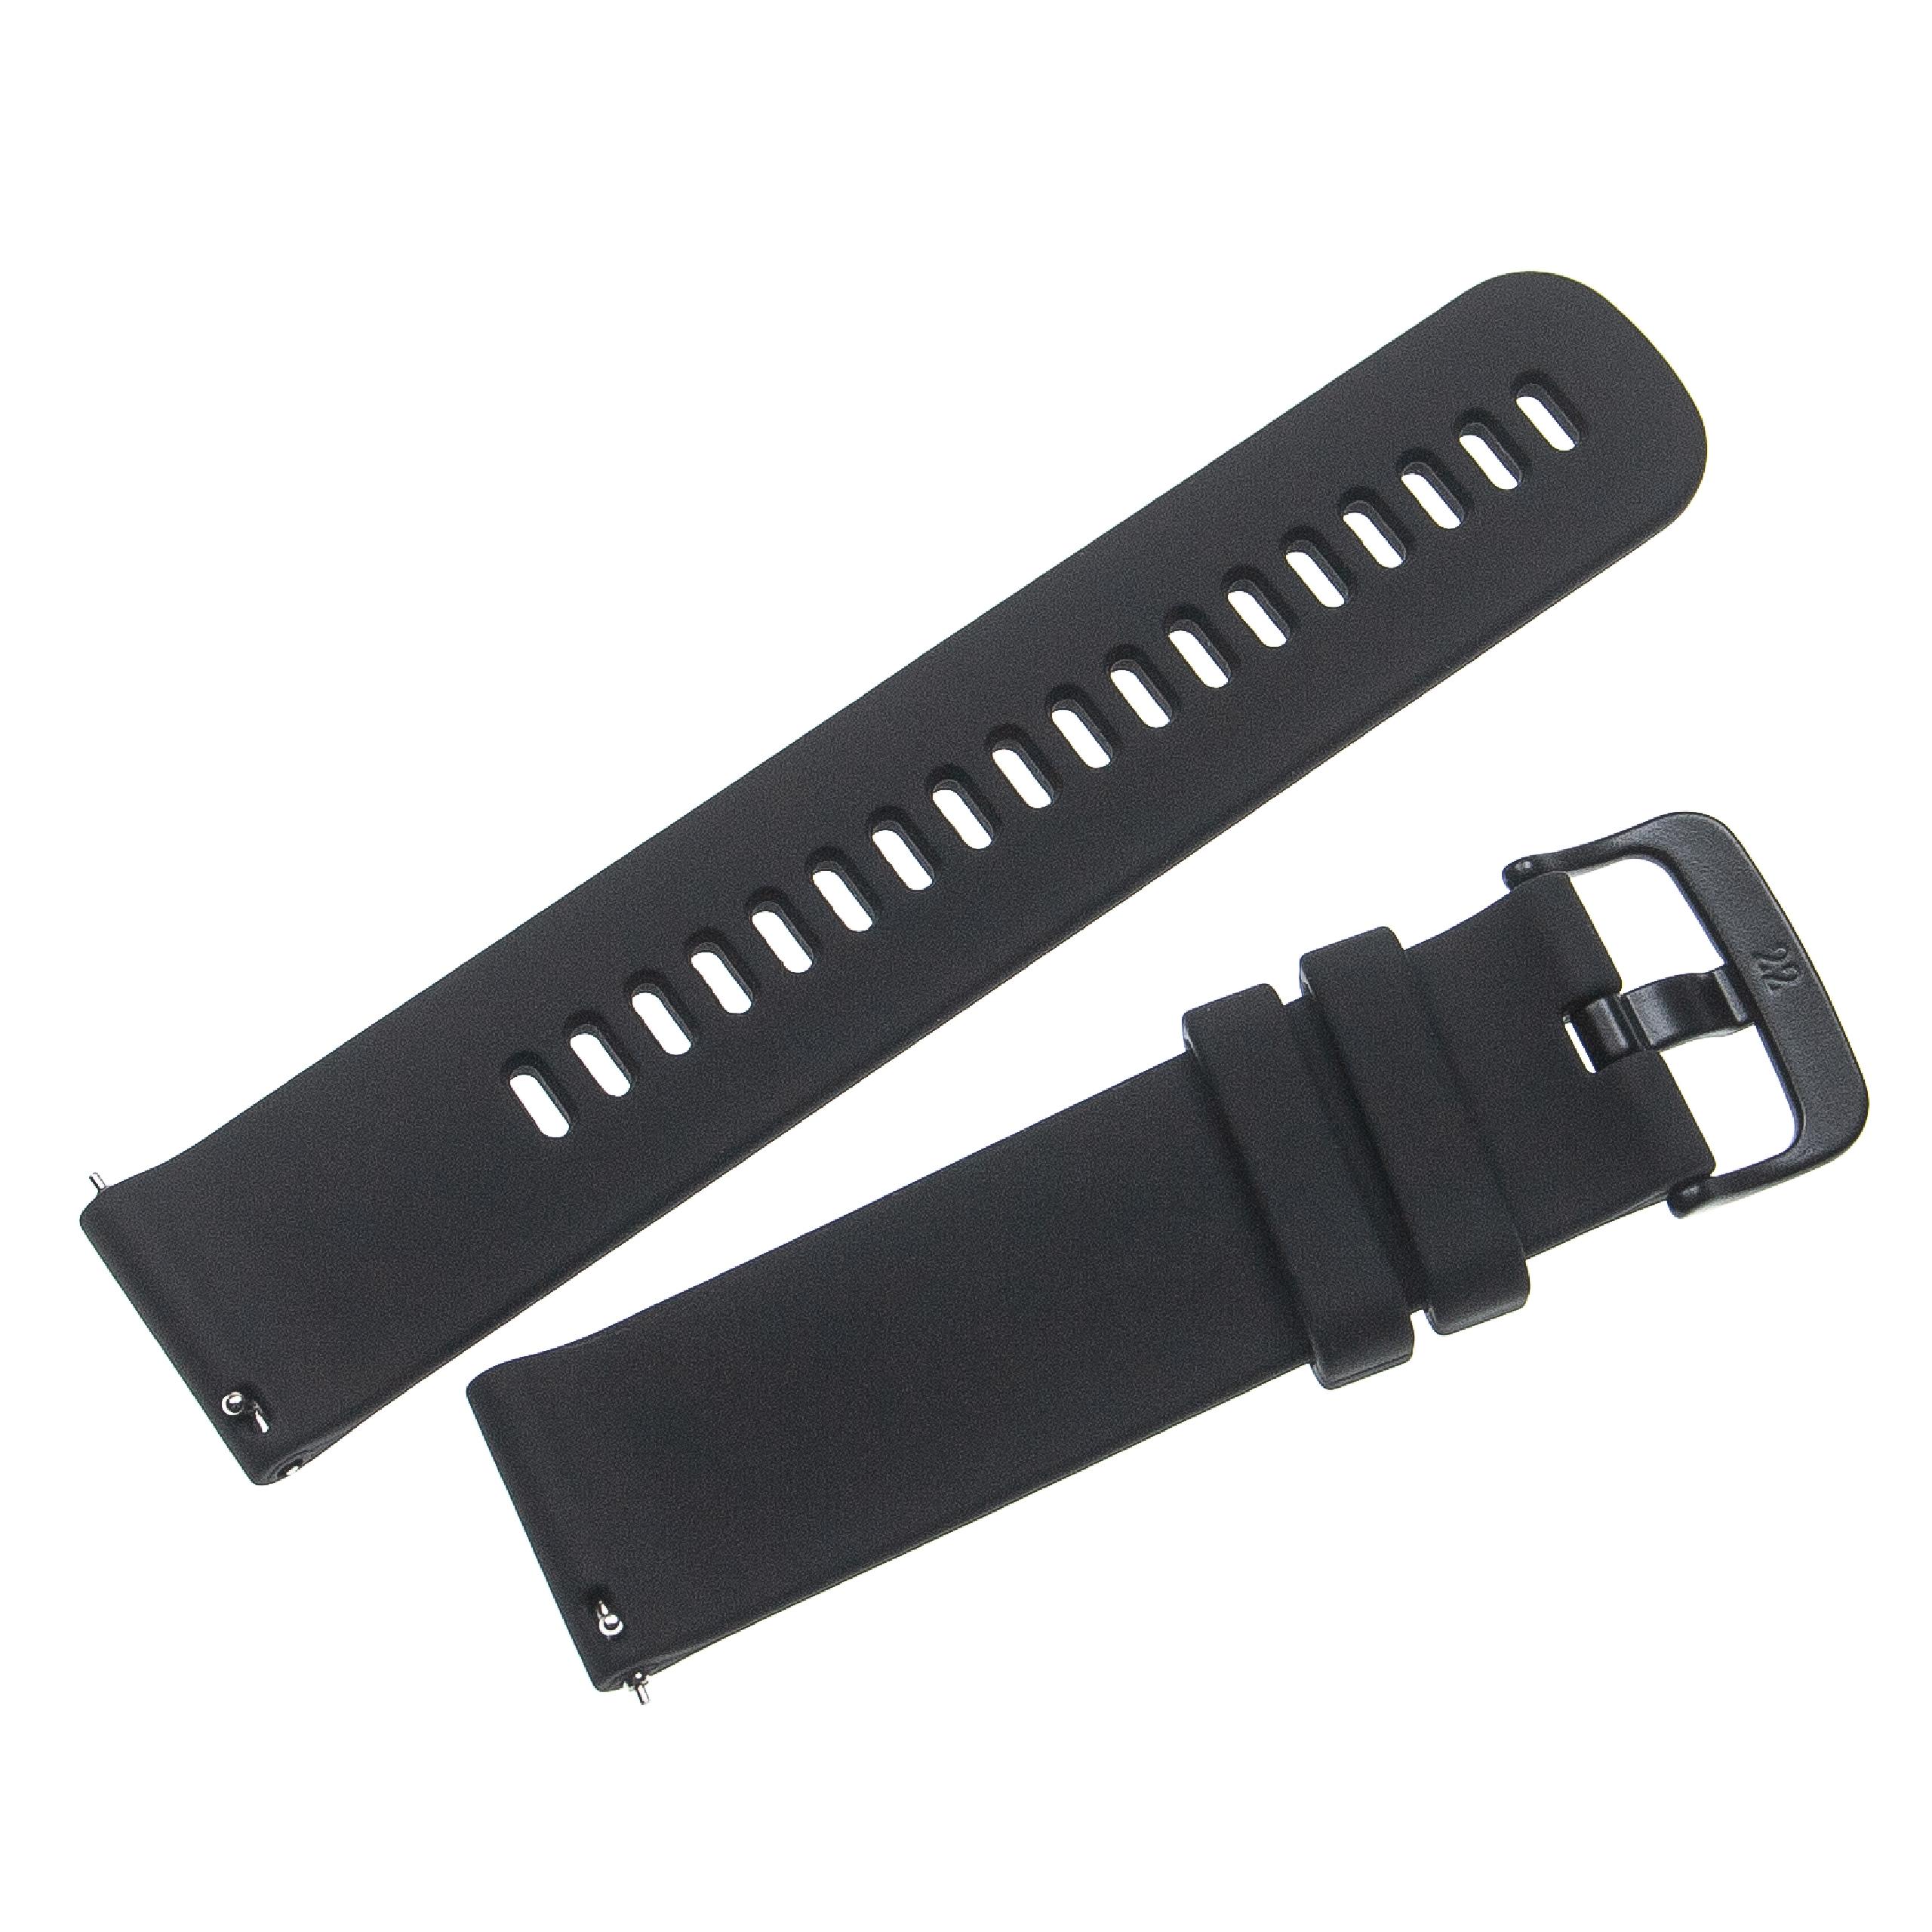 Bracelet pour montre intelligente Garmin Forerunner - 12,1 + 9,2 cm de long, 22mm de large, silicone, noir